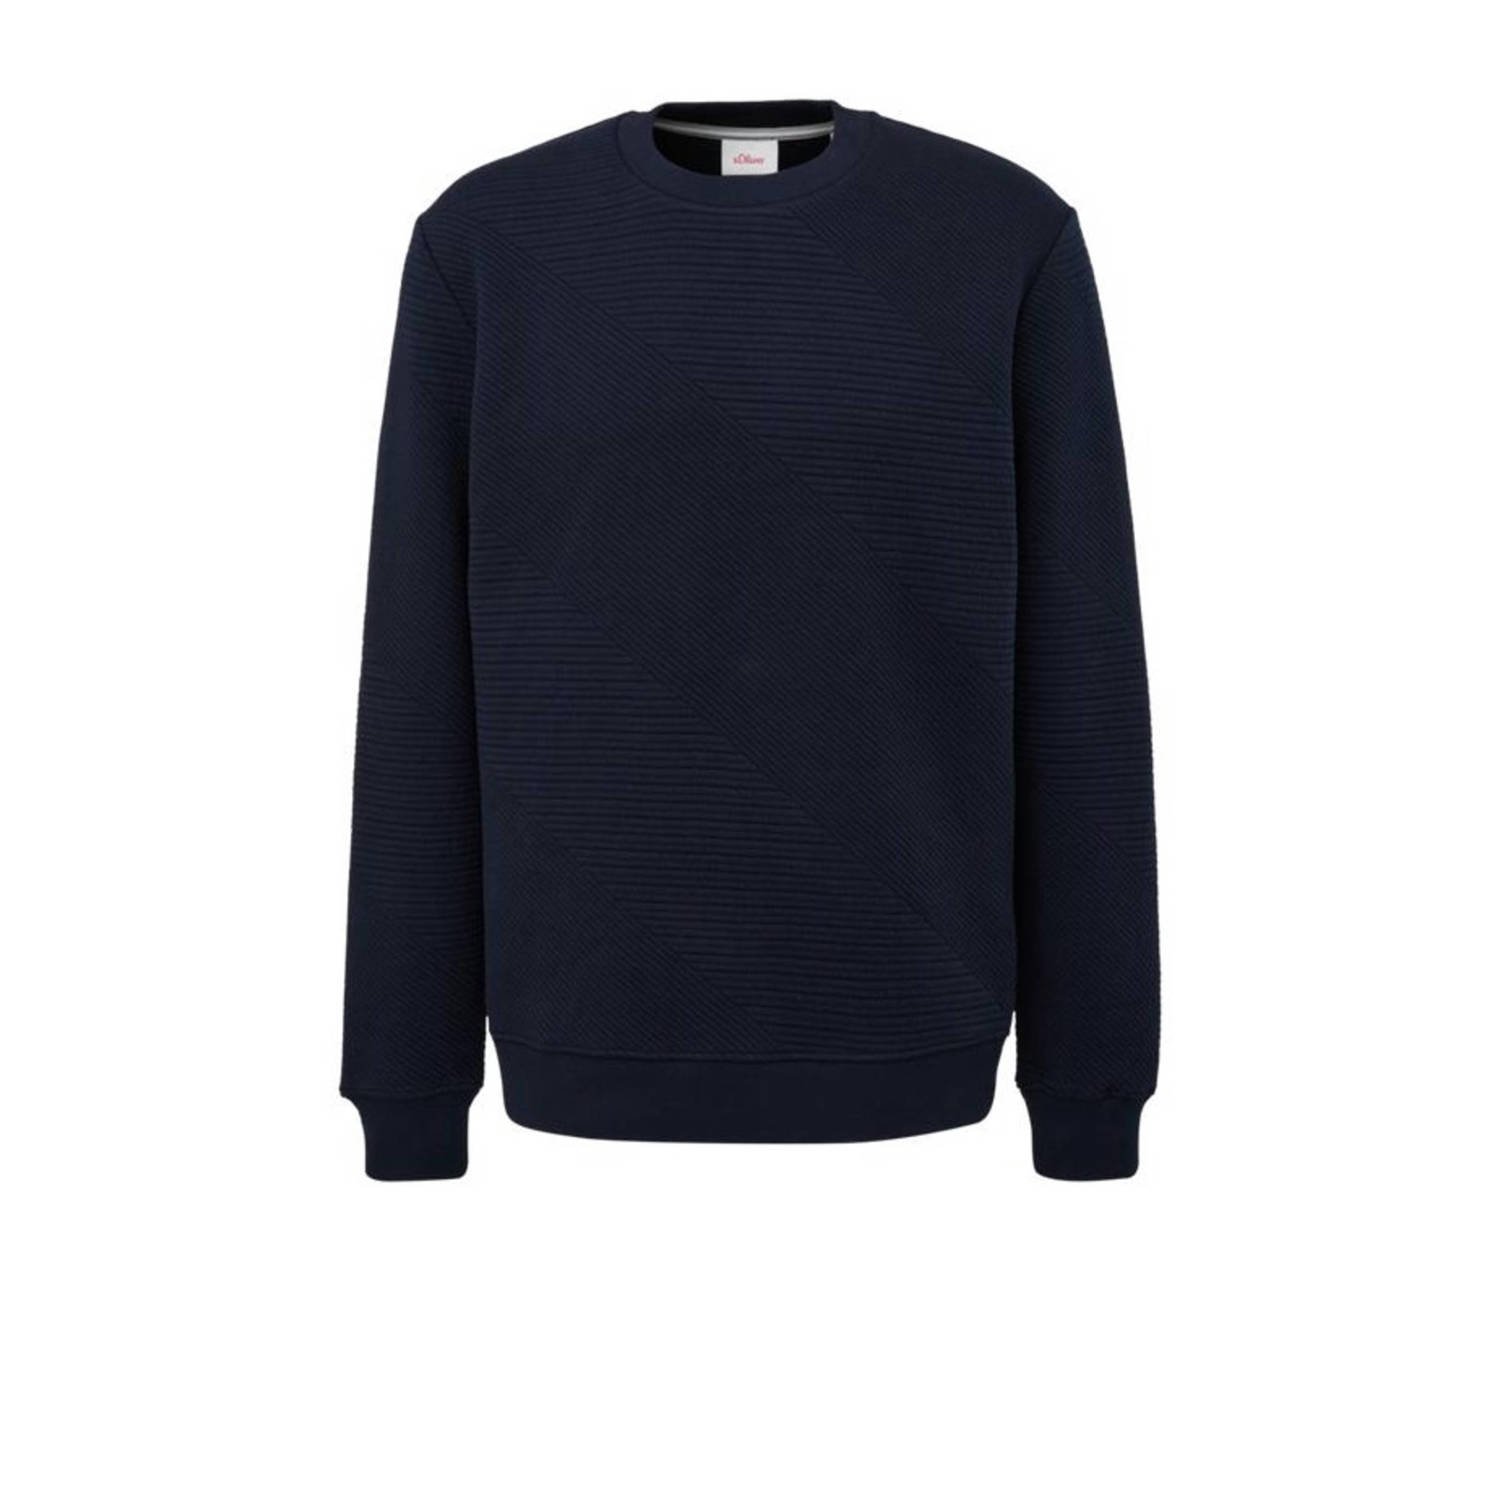 s.Oliver sweater blauw zwart